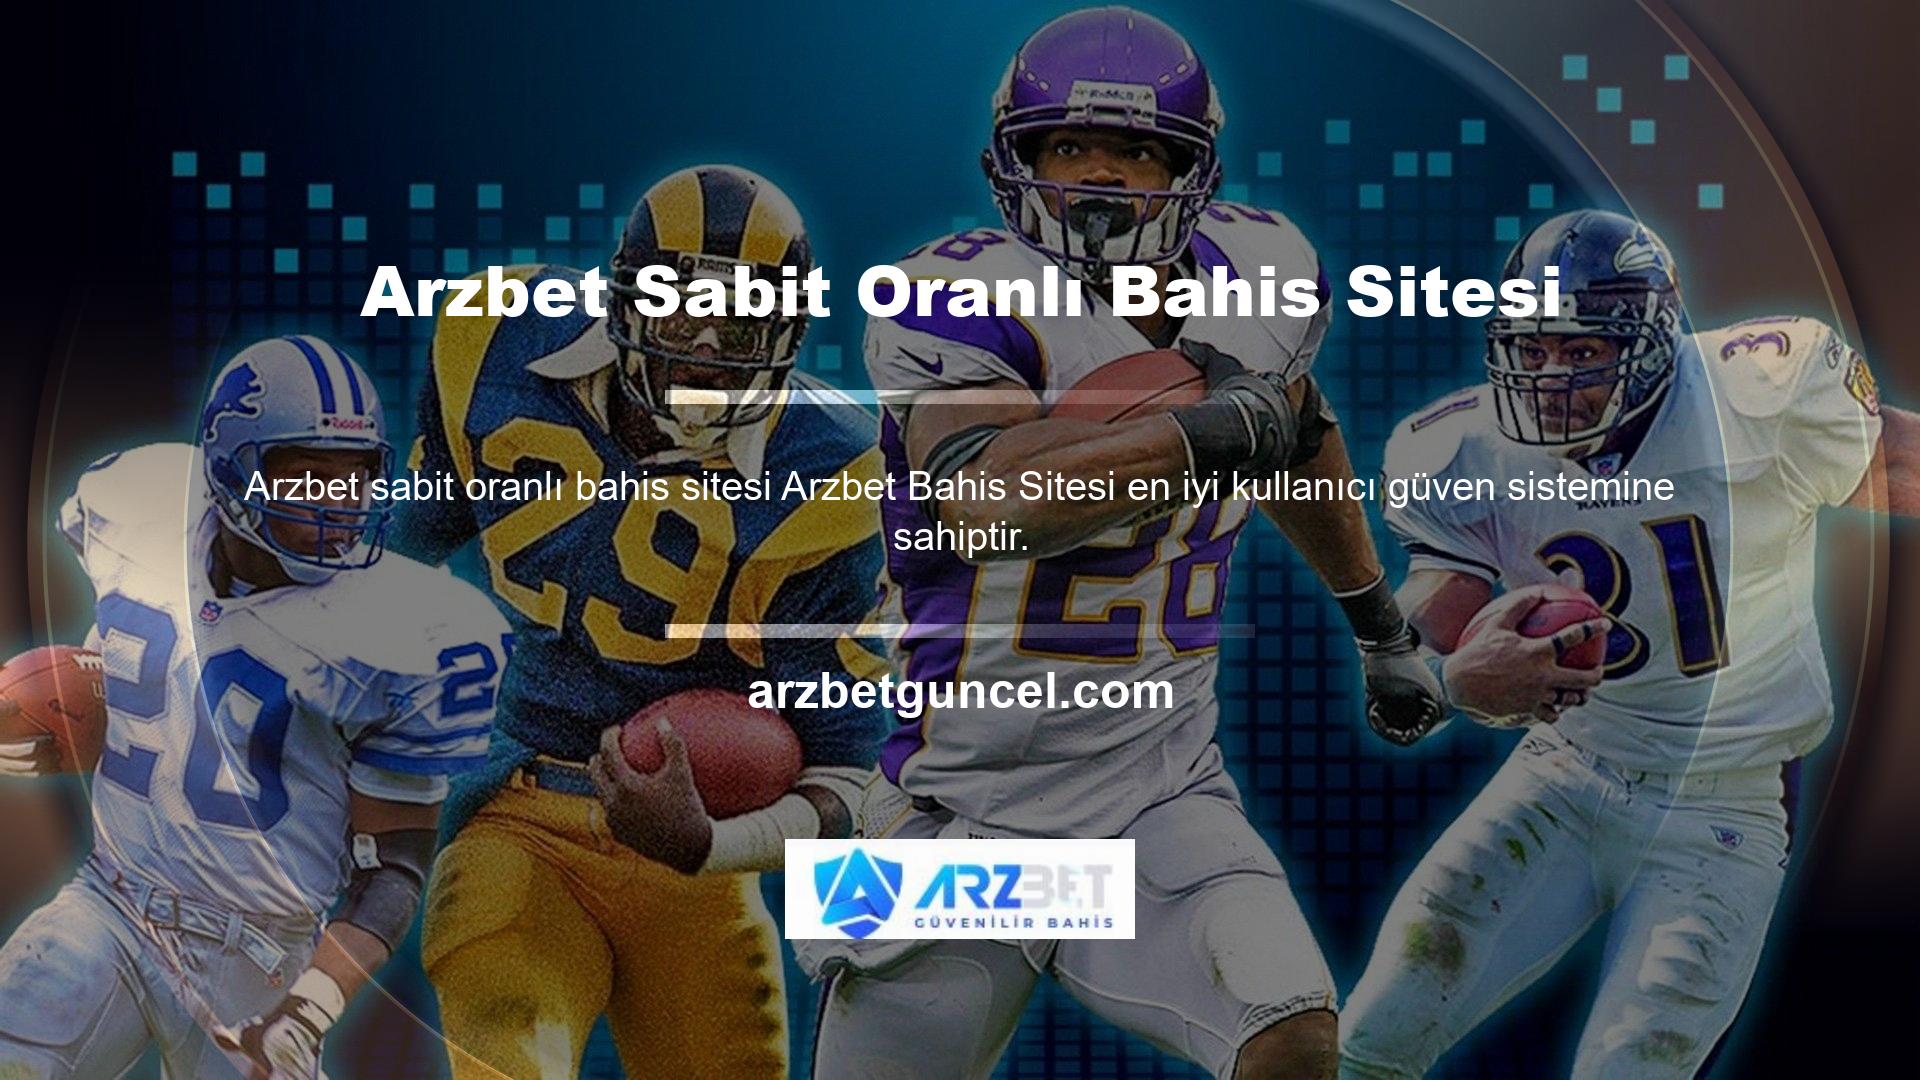 Bu amaçla Arzbet web sitesi düzenli olarak güncellenmekte ve istenmeyen programlardan korunmaktadır